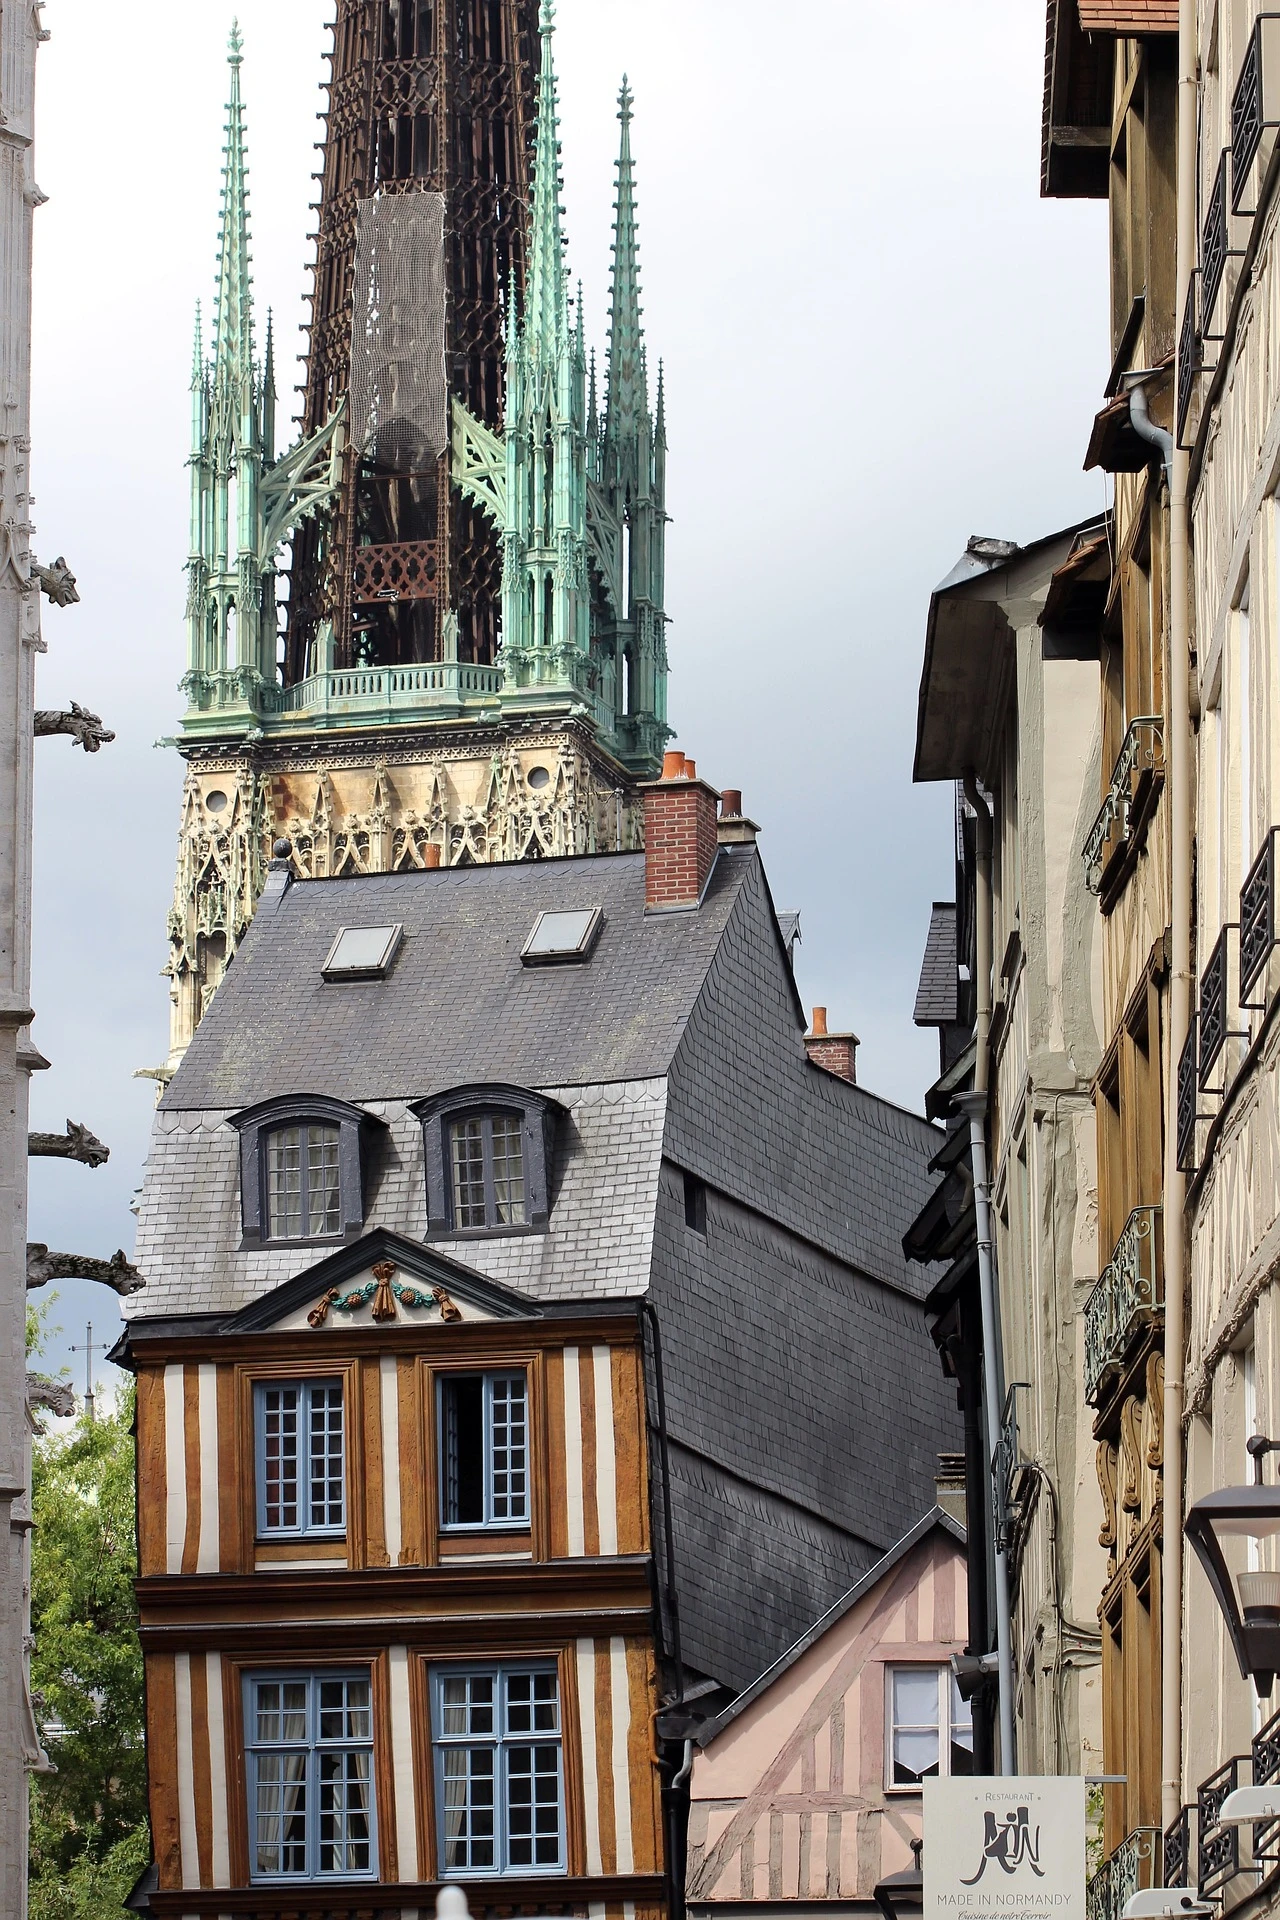 La famosa torre de la mantequilla de la catedral de Rouen. Foto elegida por monsieurdefrance.com: Imagen de Nicolas DEBRAY de Pixabay